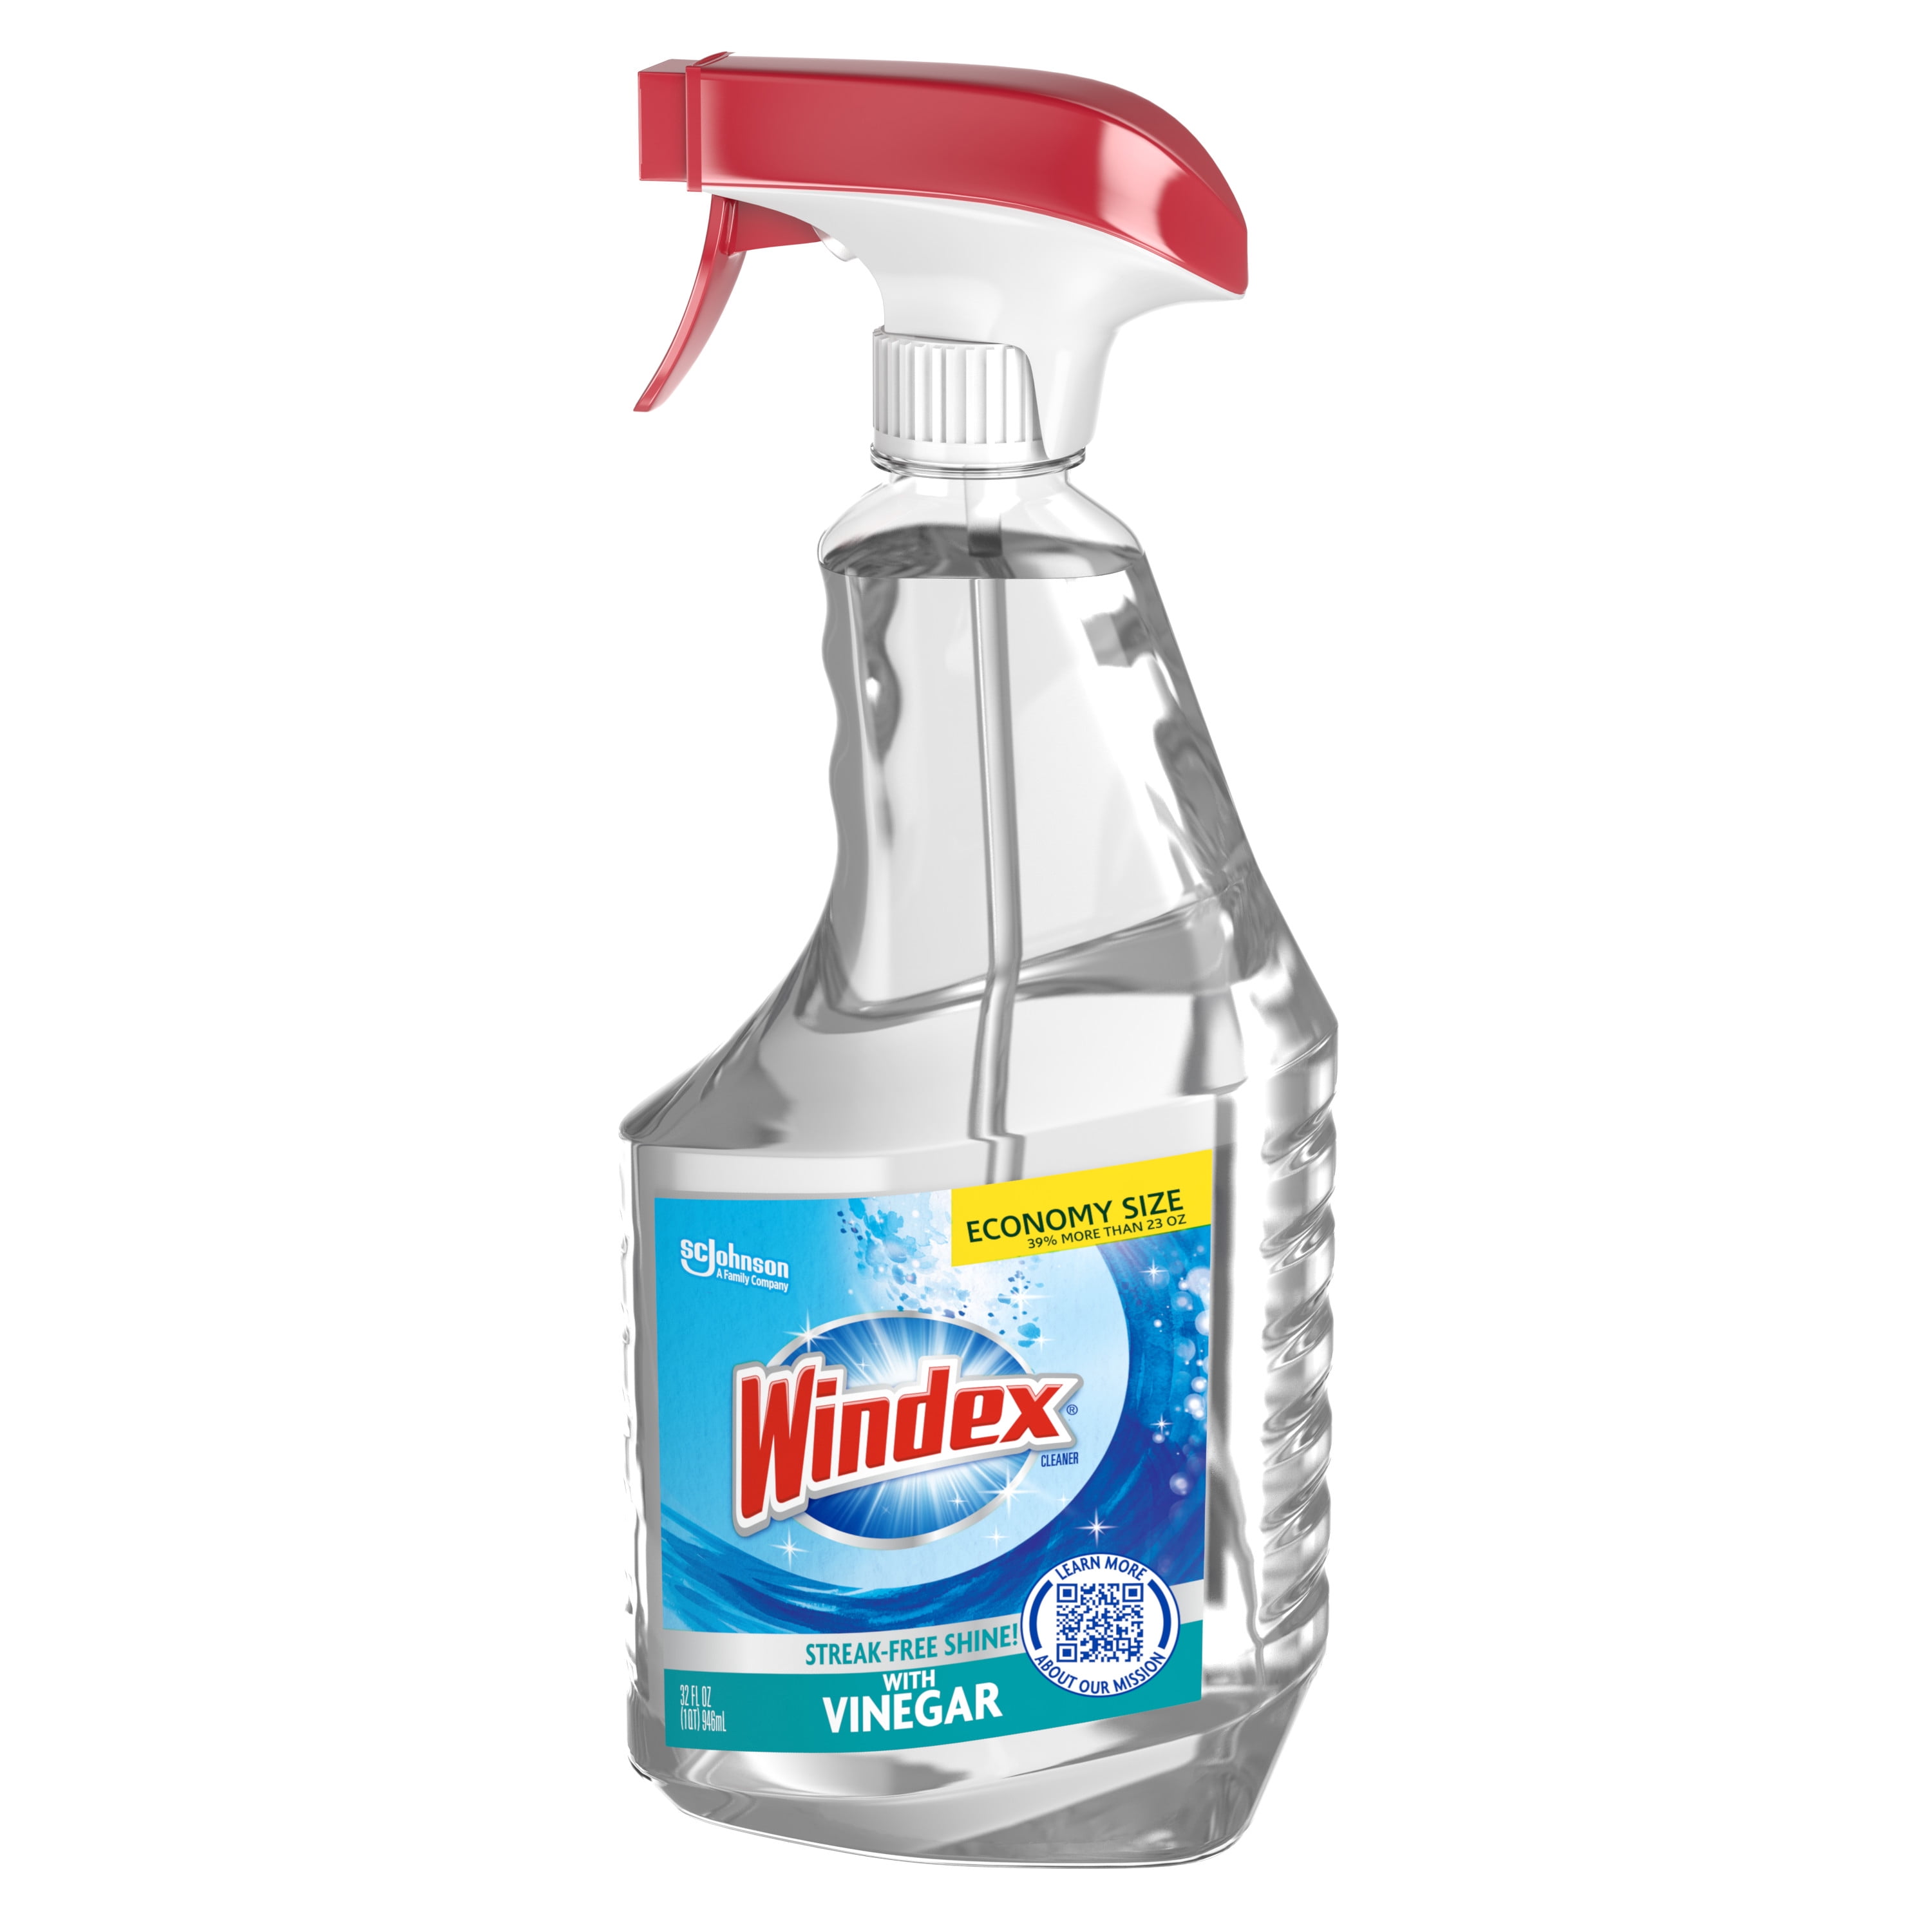 SC Johnson WINDEX CLEANER With Vinegar 67.6 fl.oz VERY BIG Bottle